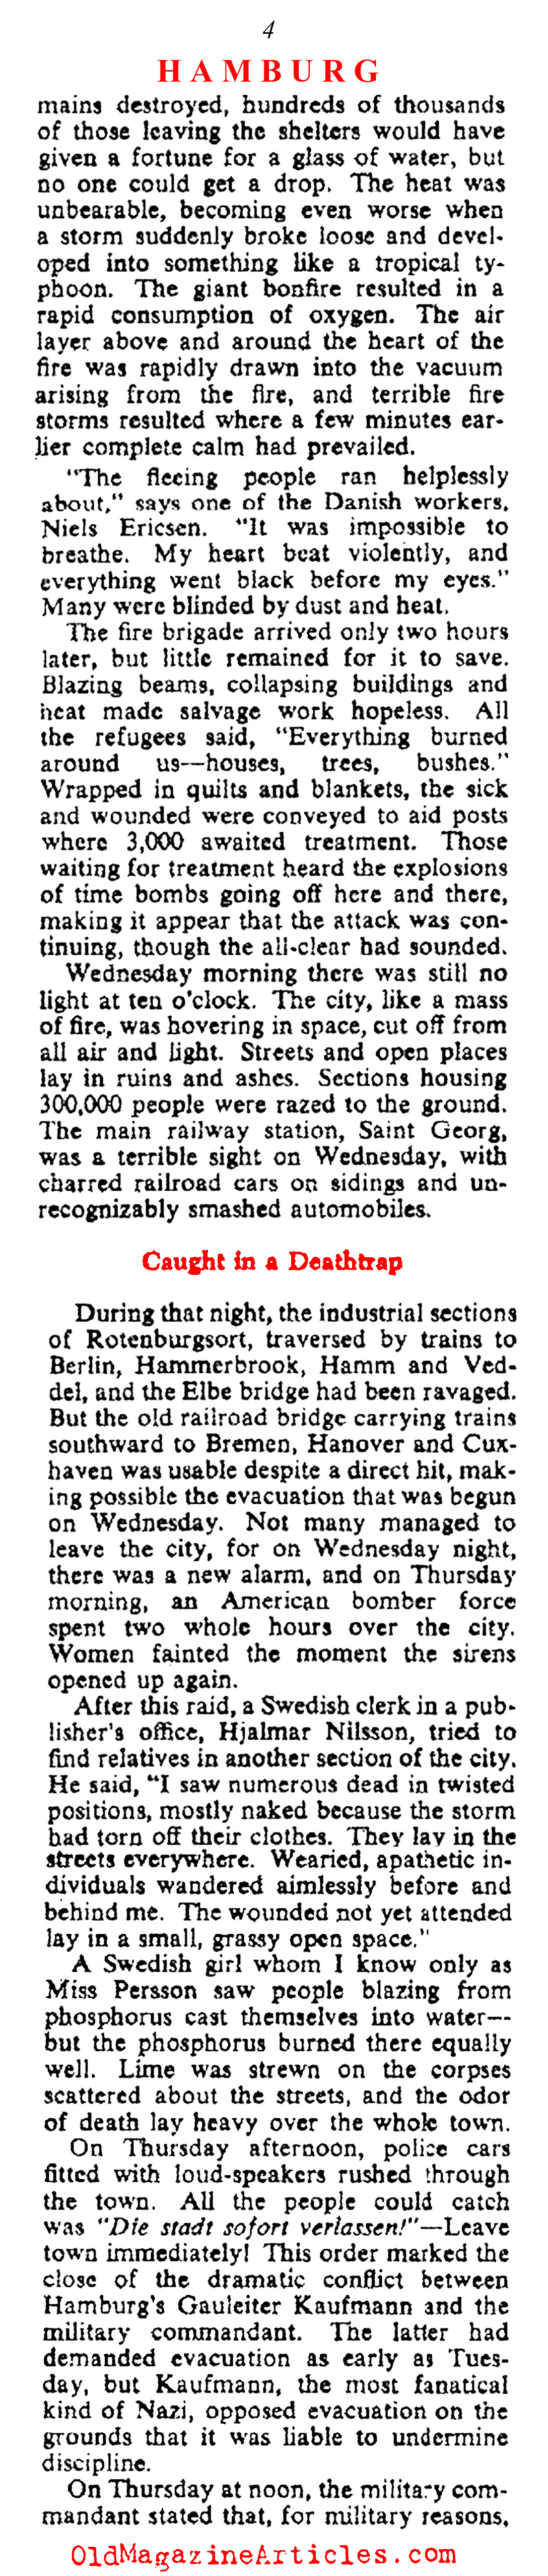 ''They Saw Hamburg Die'' (Collier's Magazine, 1943)